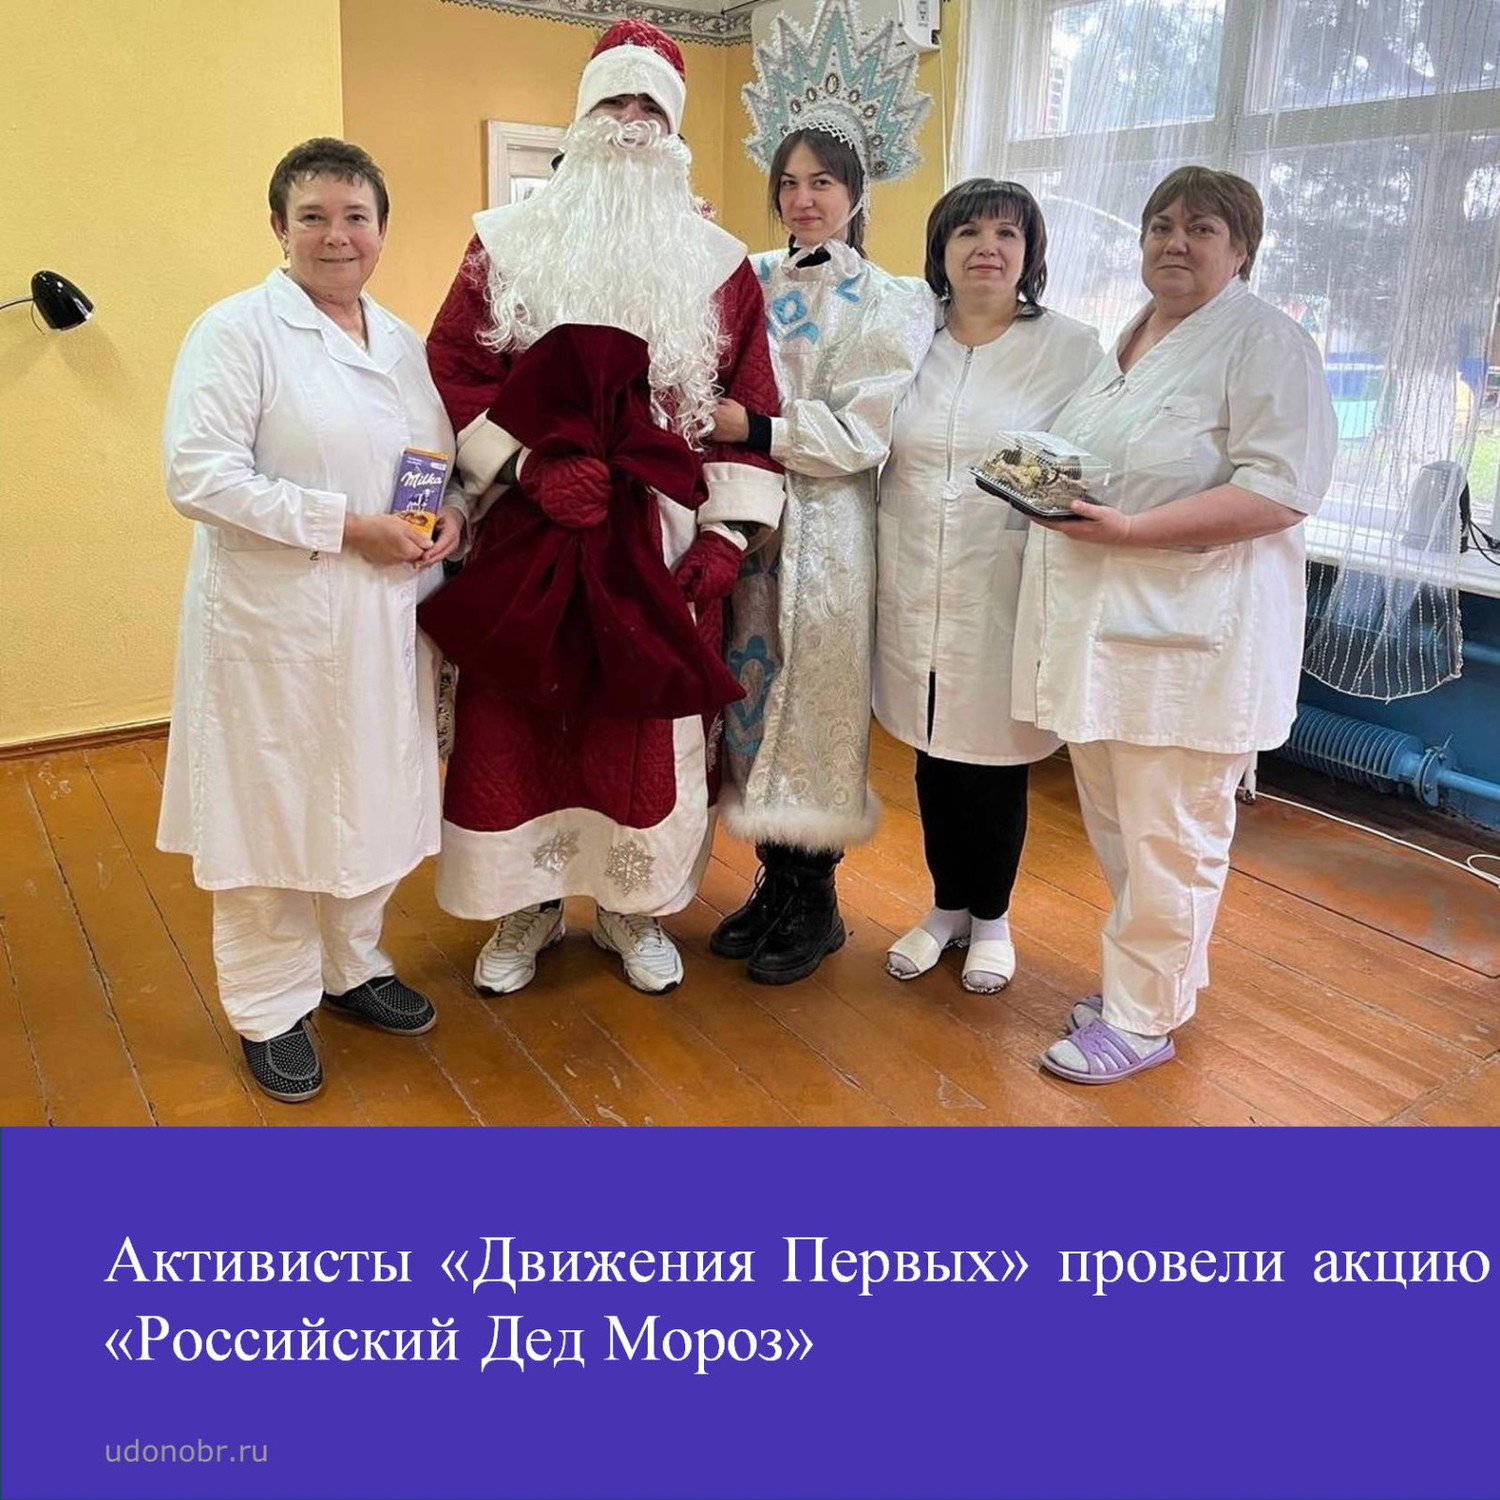 Активисты «Движения Первых» провели акцию «Российский Дед Мороз»